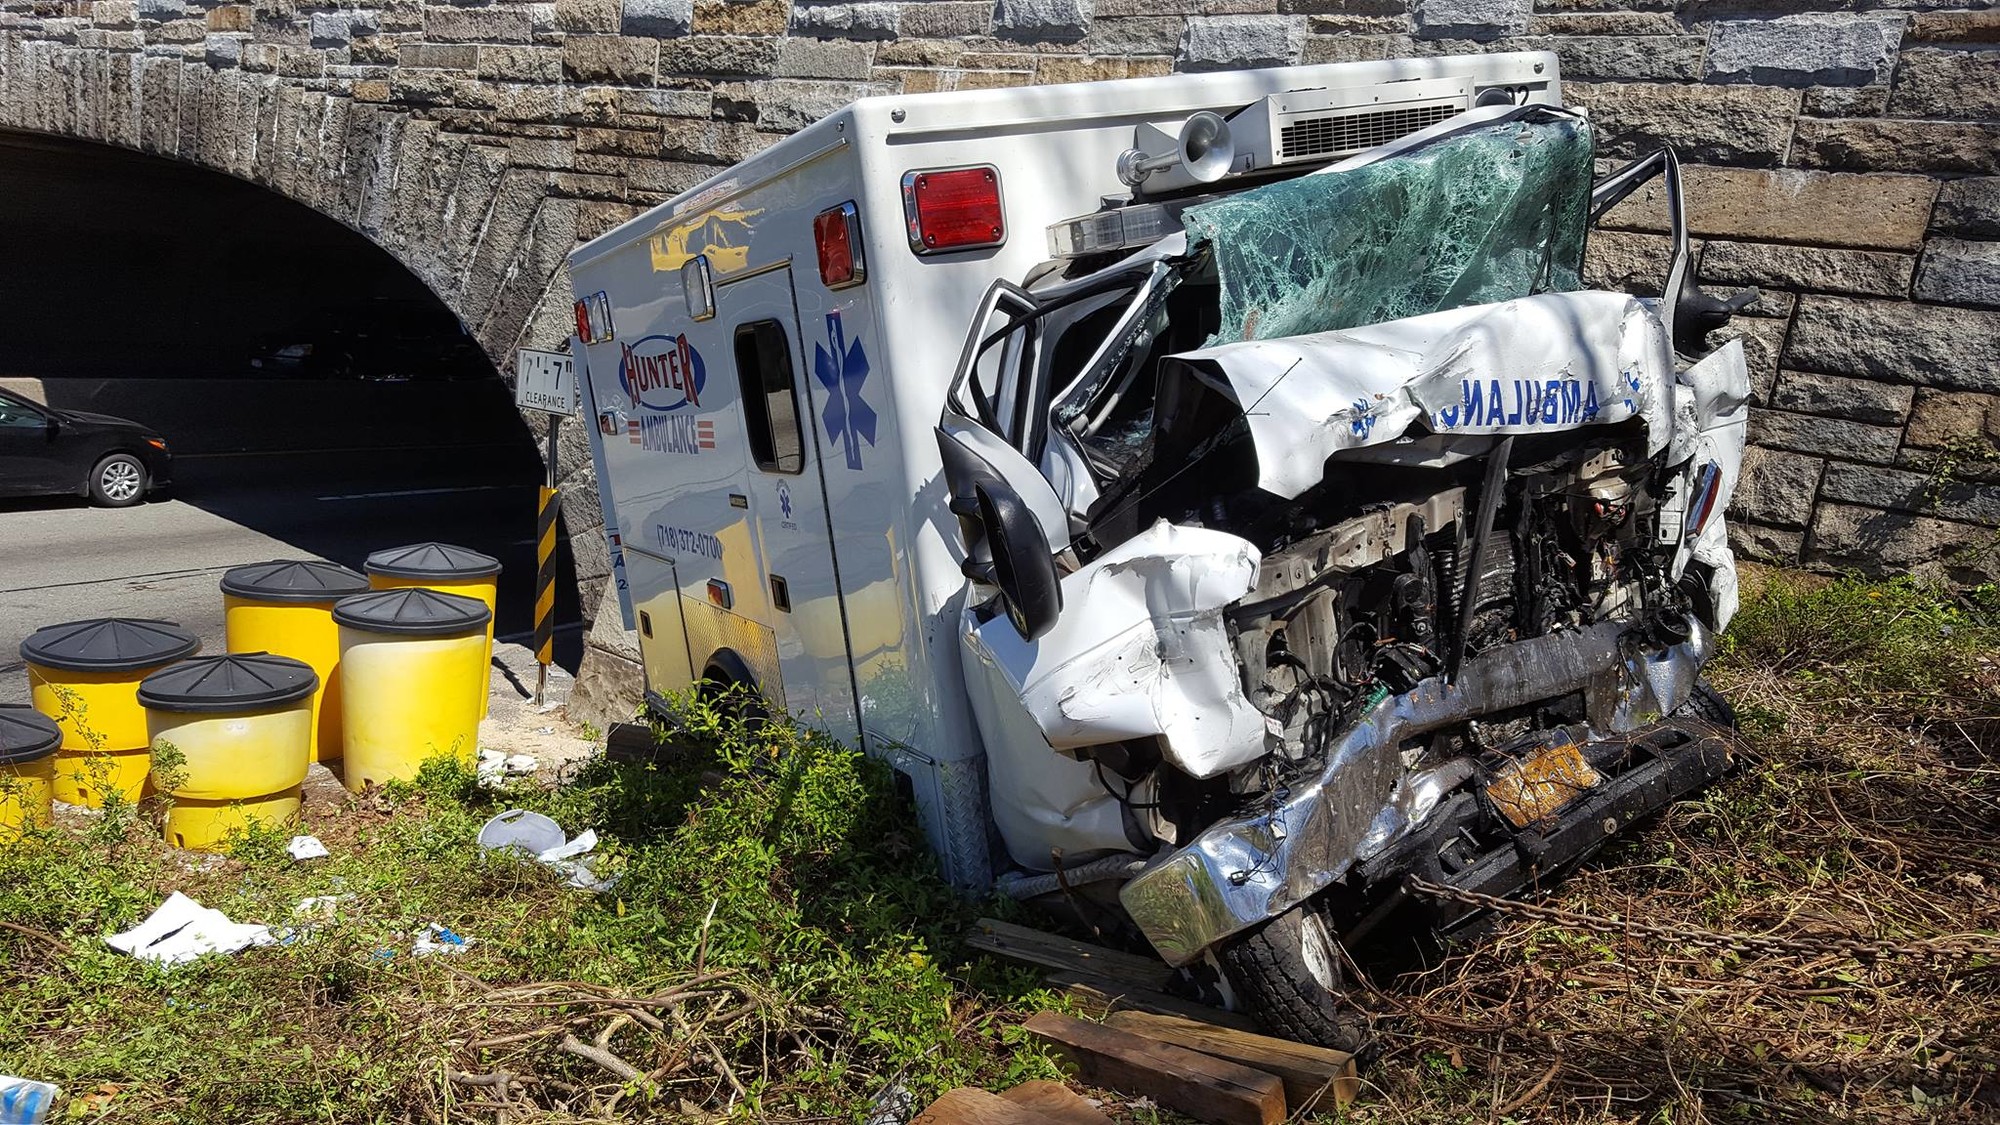 The Hunter EMS ambulance after the crash.